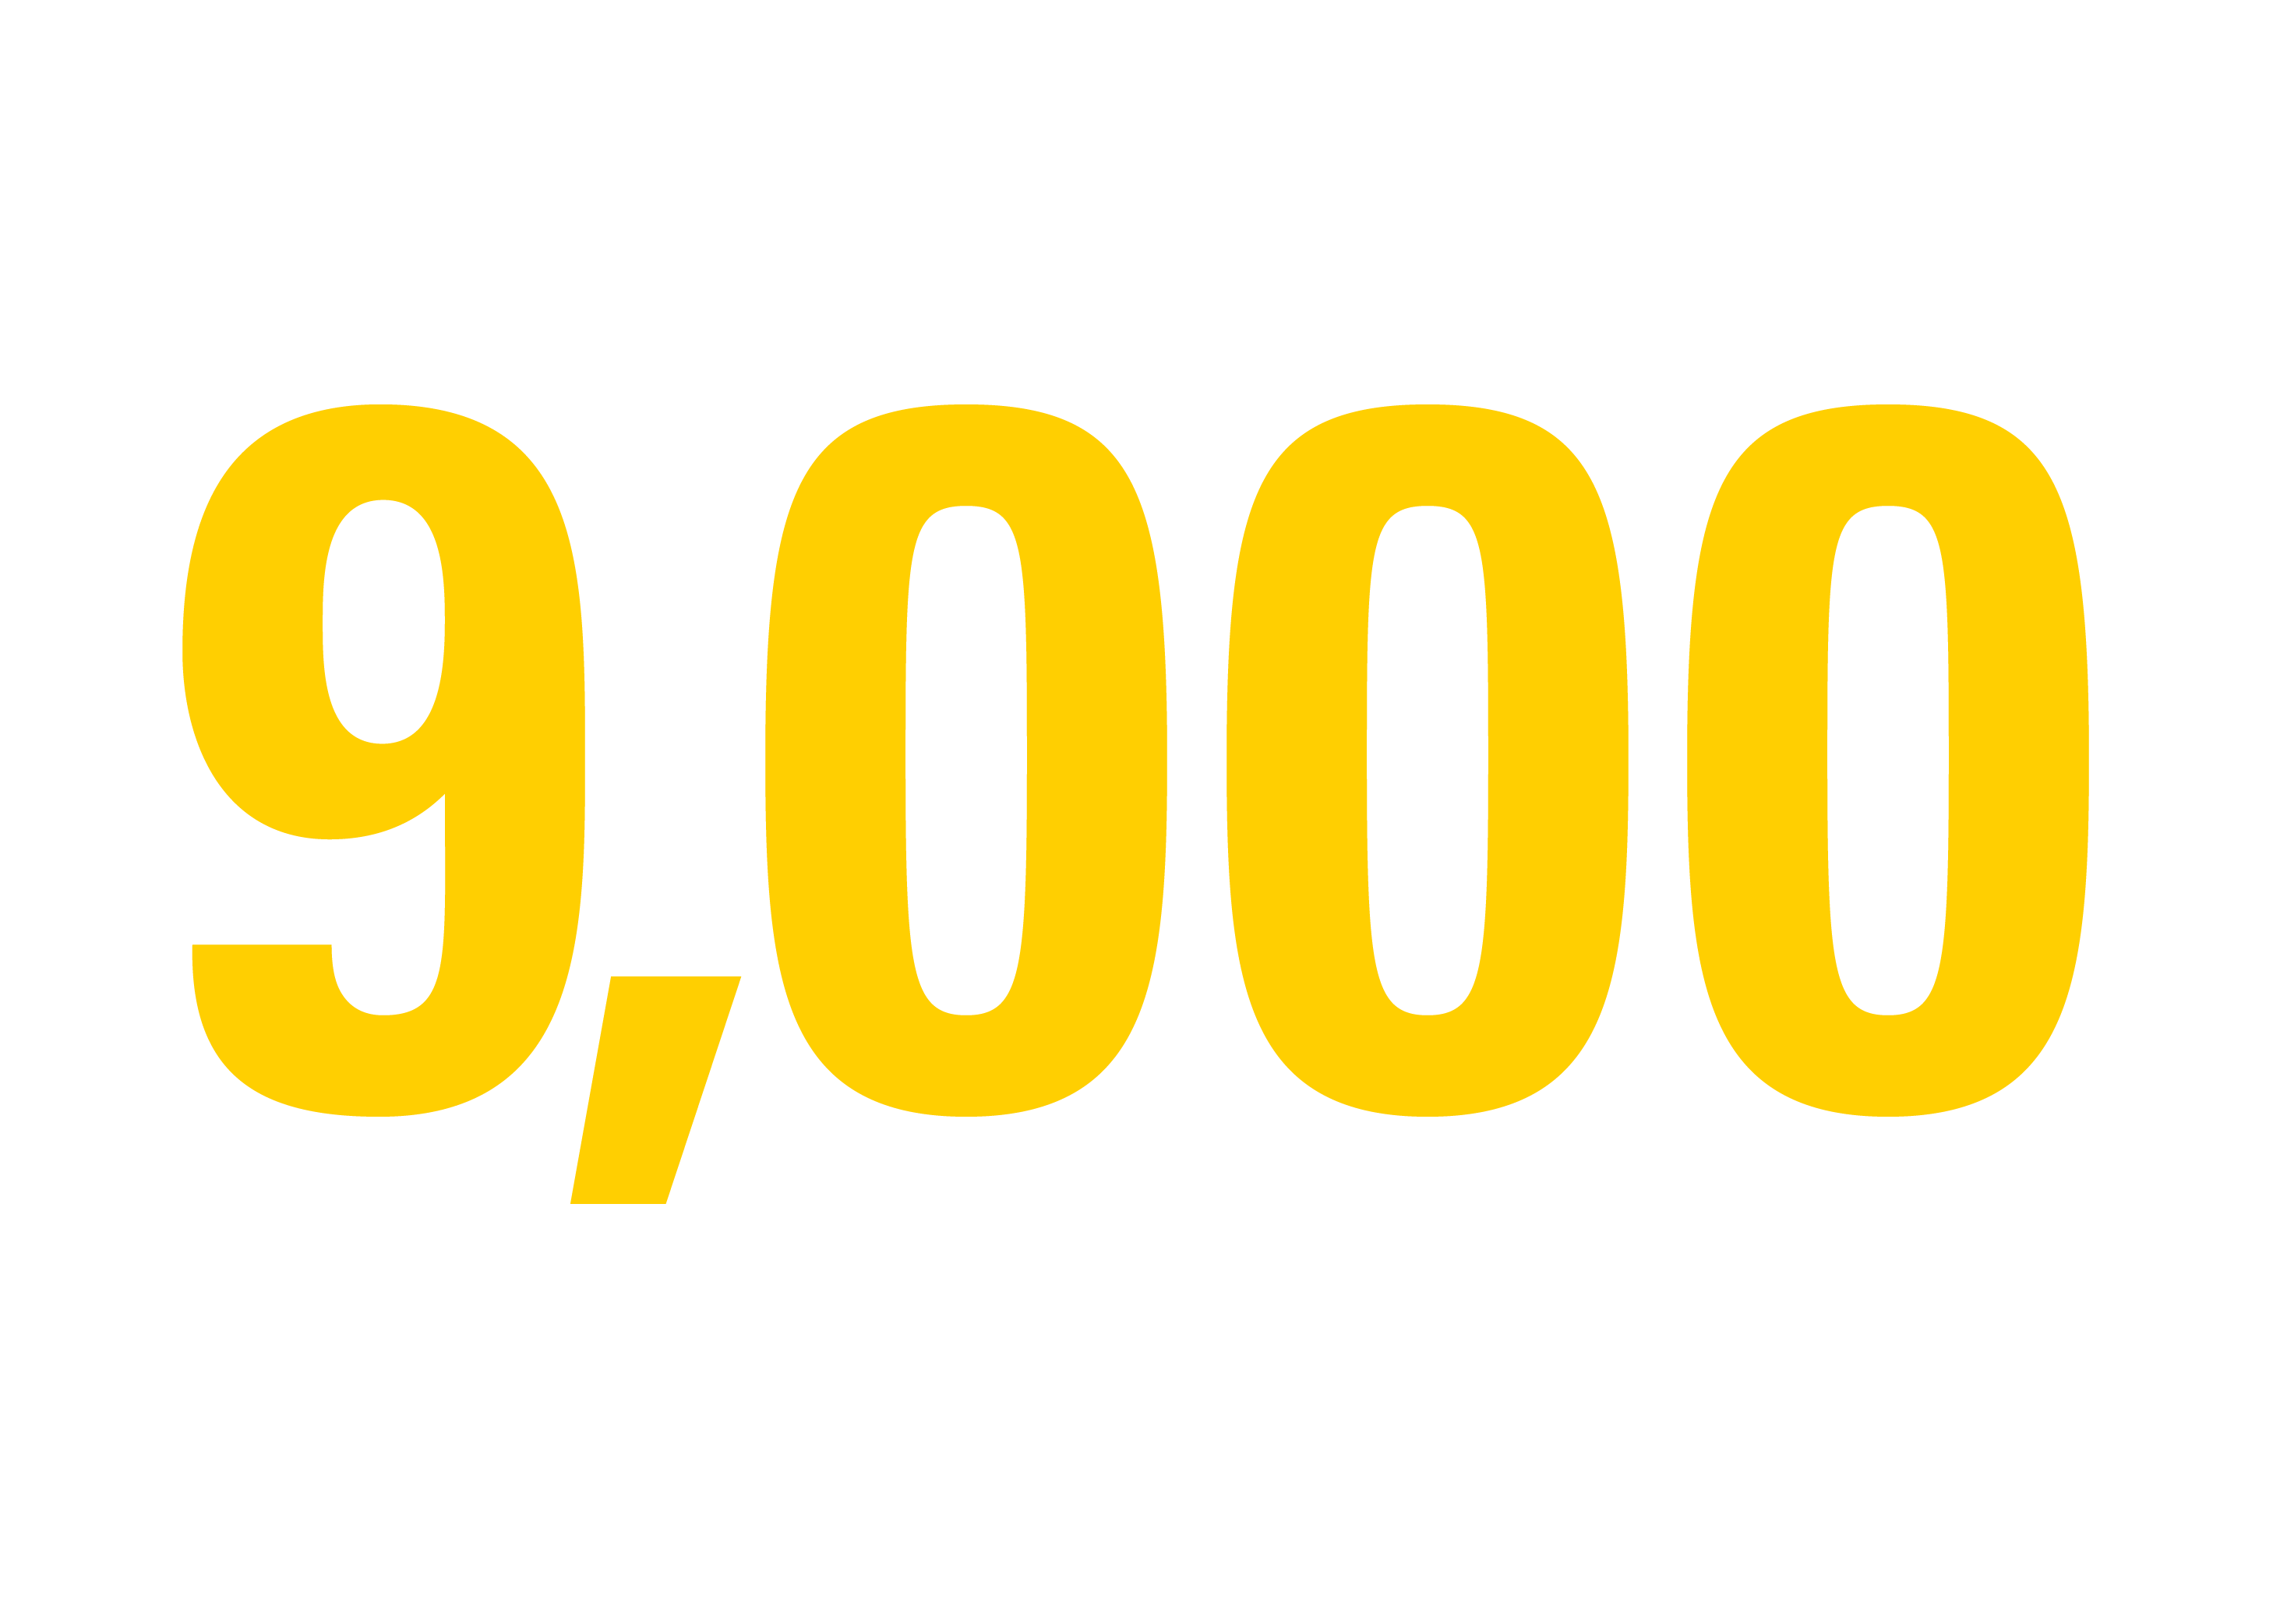 9,000 Living Alumni